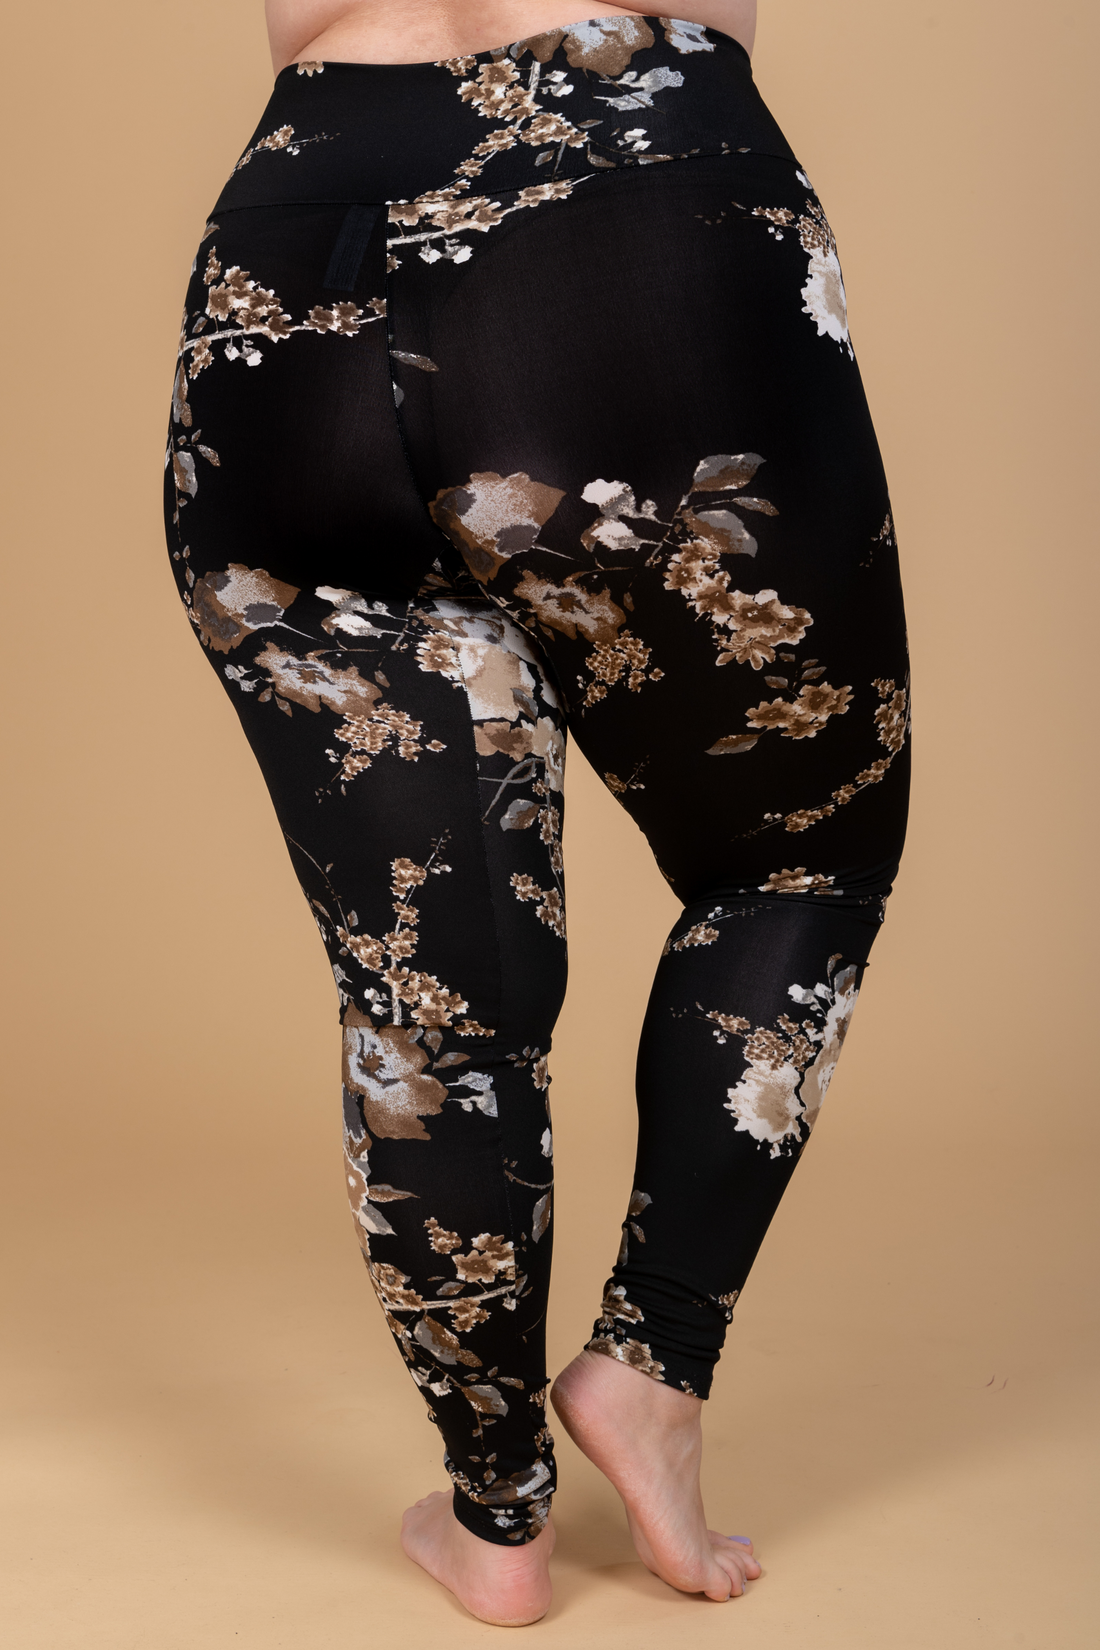 Legging confortable taille haute à motifs fleuris noir, beige et crème fabriqué au Québec.